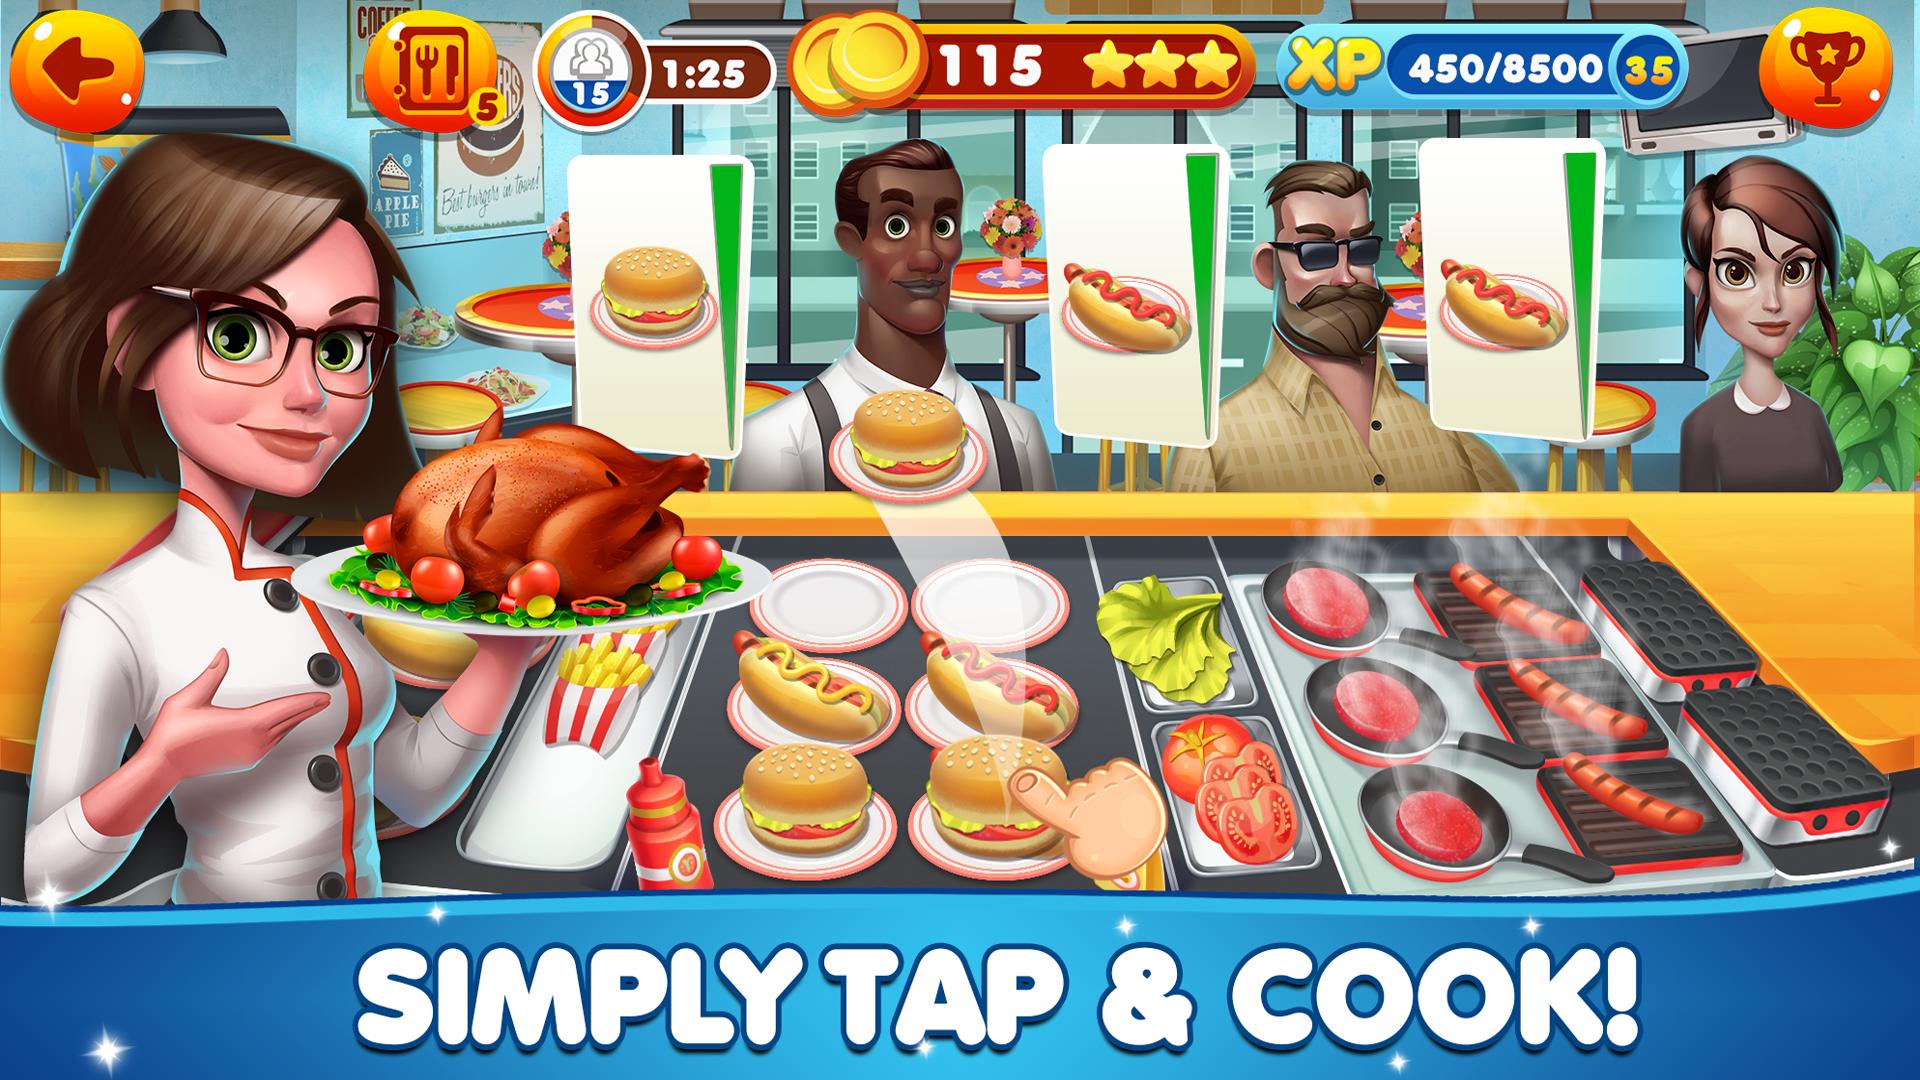 Juegos de cocina - Cocinero for Android - APK Download